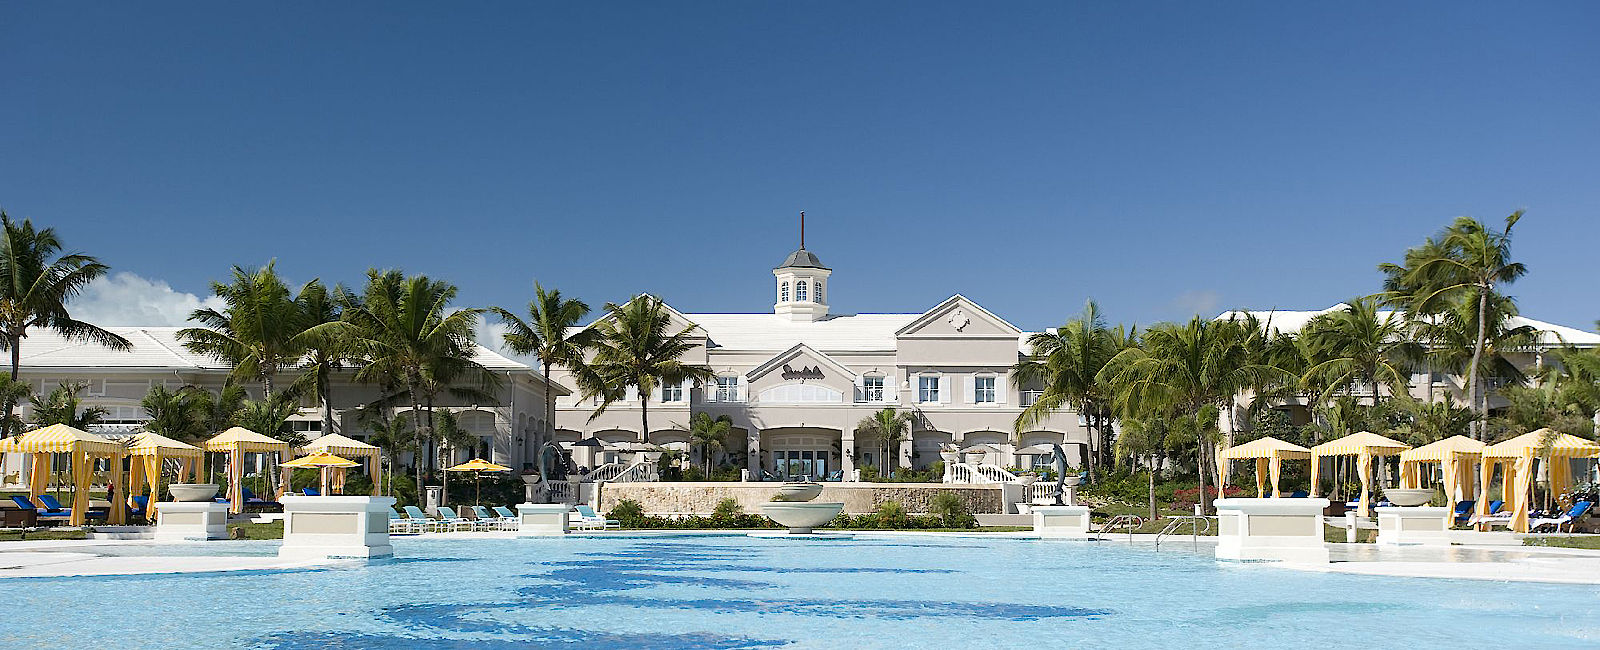 HOTEL TIPPS
 Sandals Emerald Bay 
 Luxus Golfresort in Weiß und Türkis 